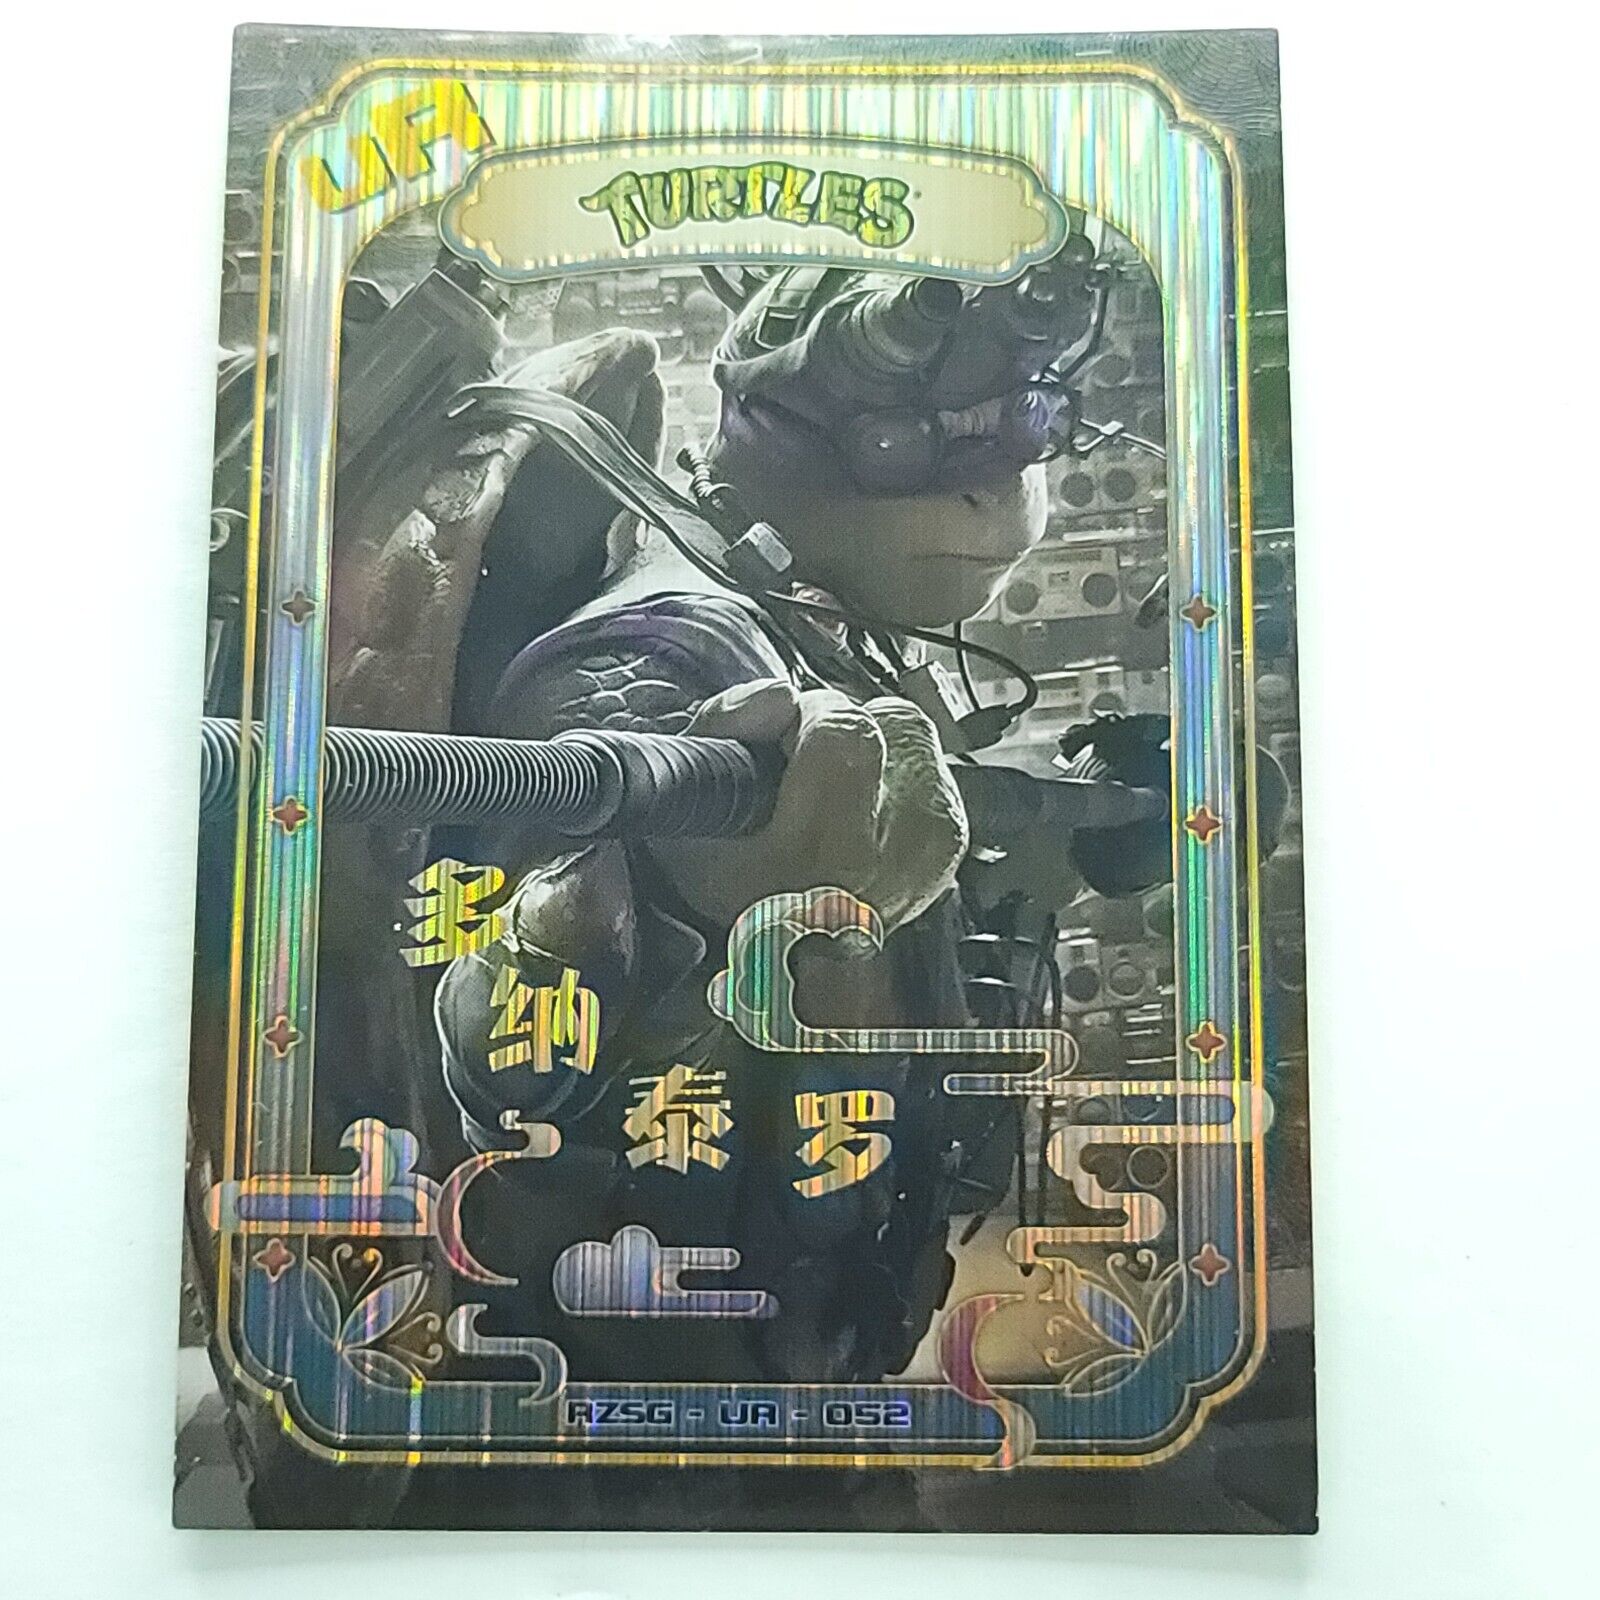 Donatello Rise Of The Teenage Mutant Ninja Turtles Trading Card TMNT UR-052